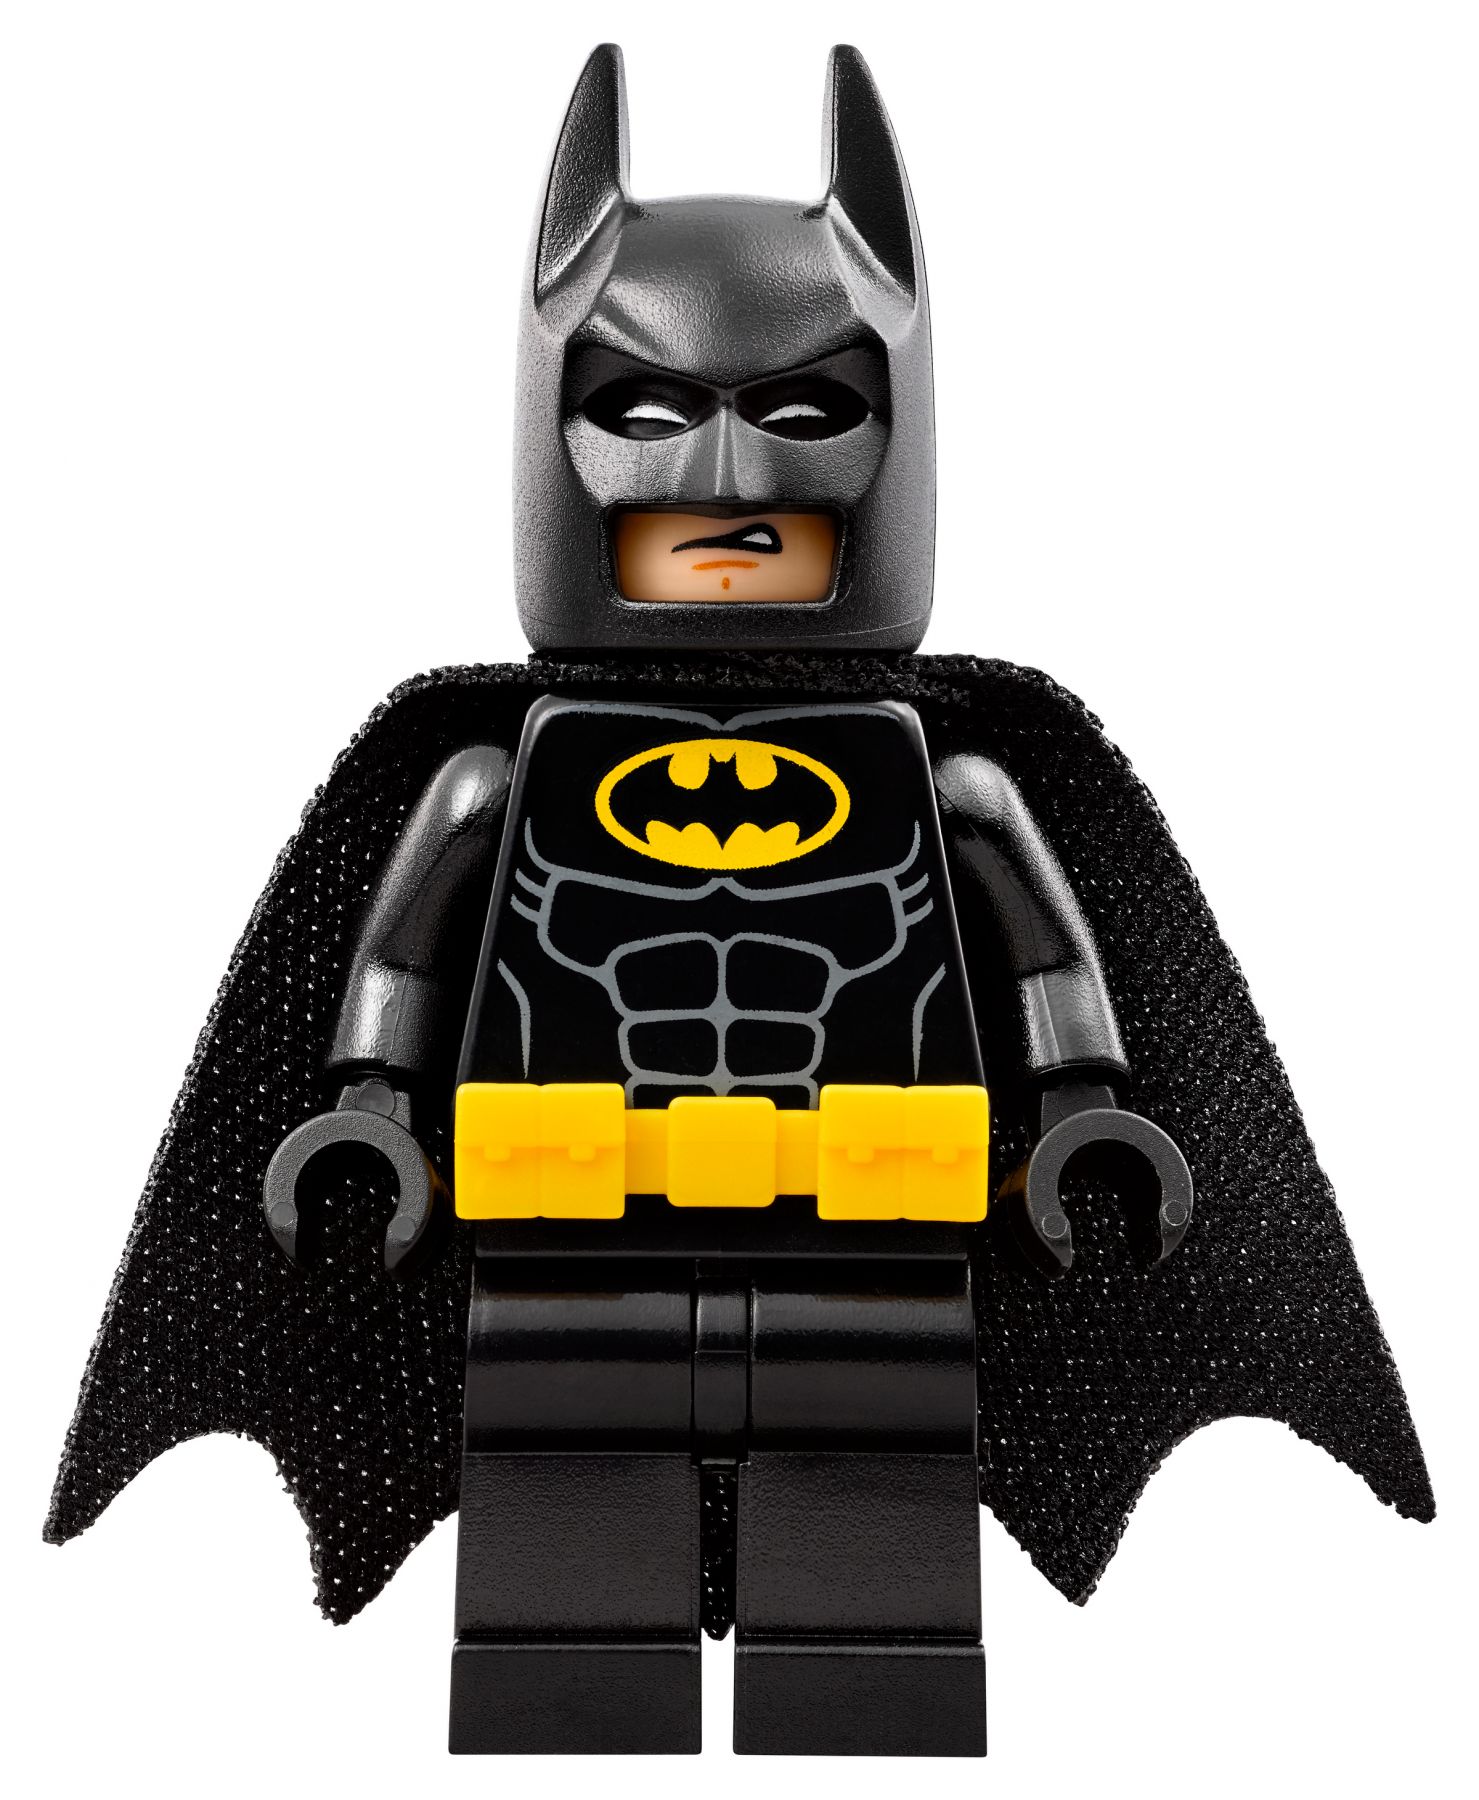 LEGO The LEGO Batman Movie 70908 Der Scuttler LEGO_70908_alt13.jpg